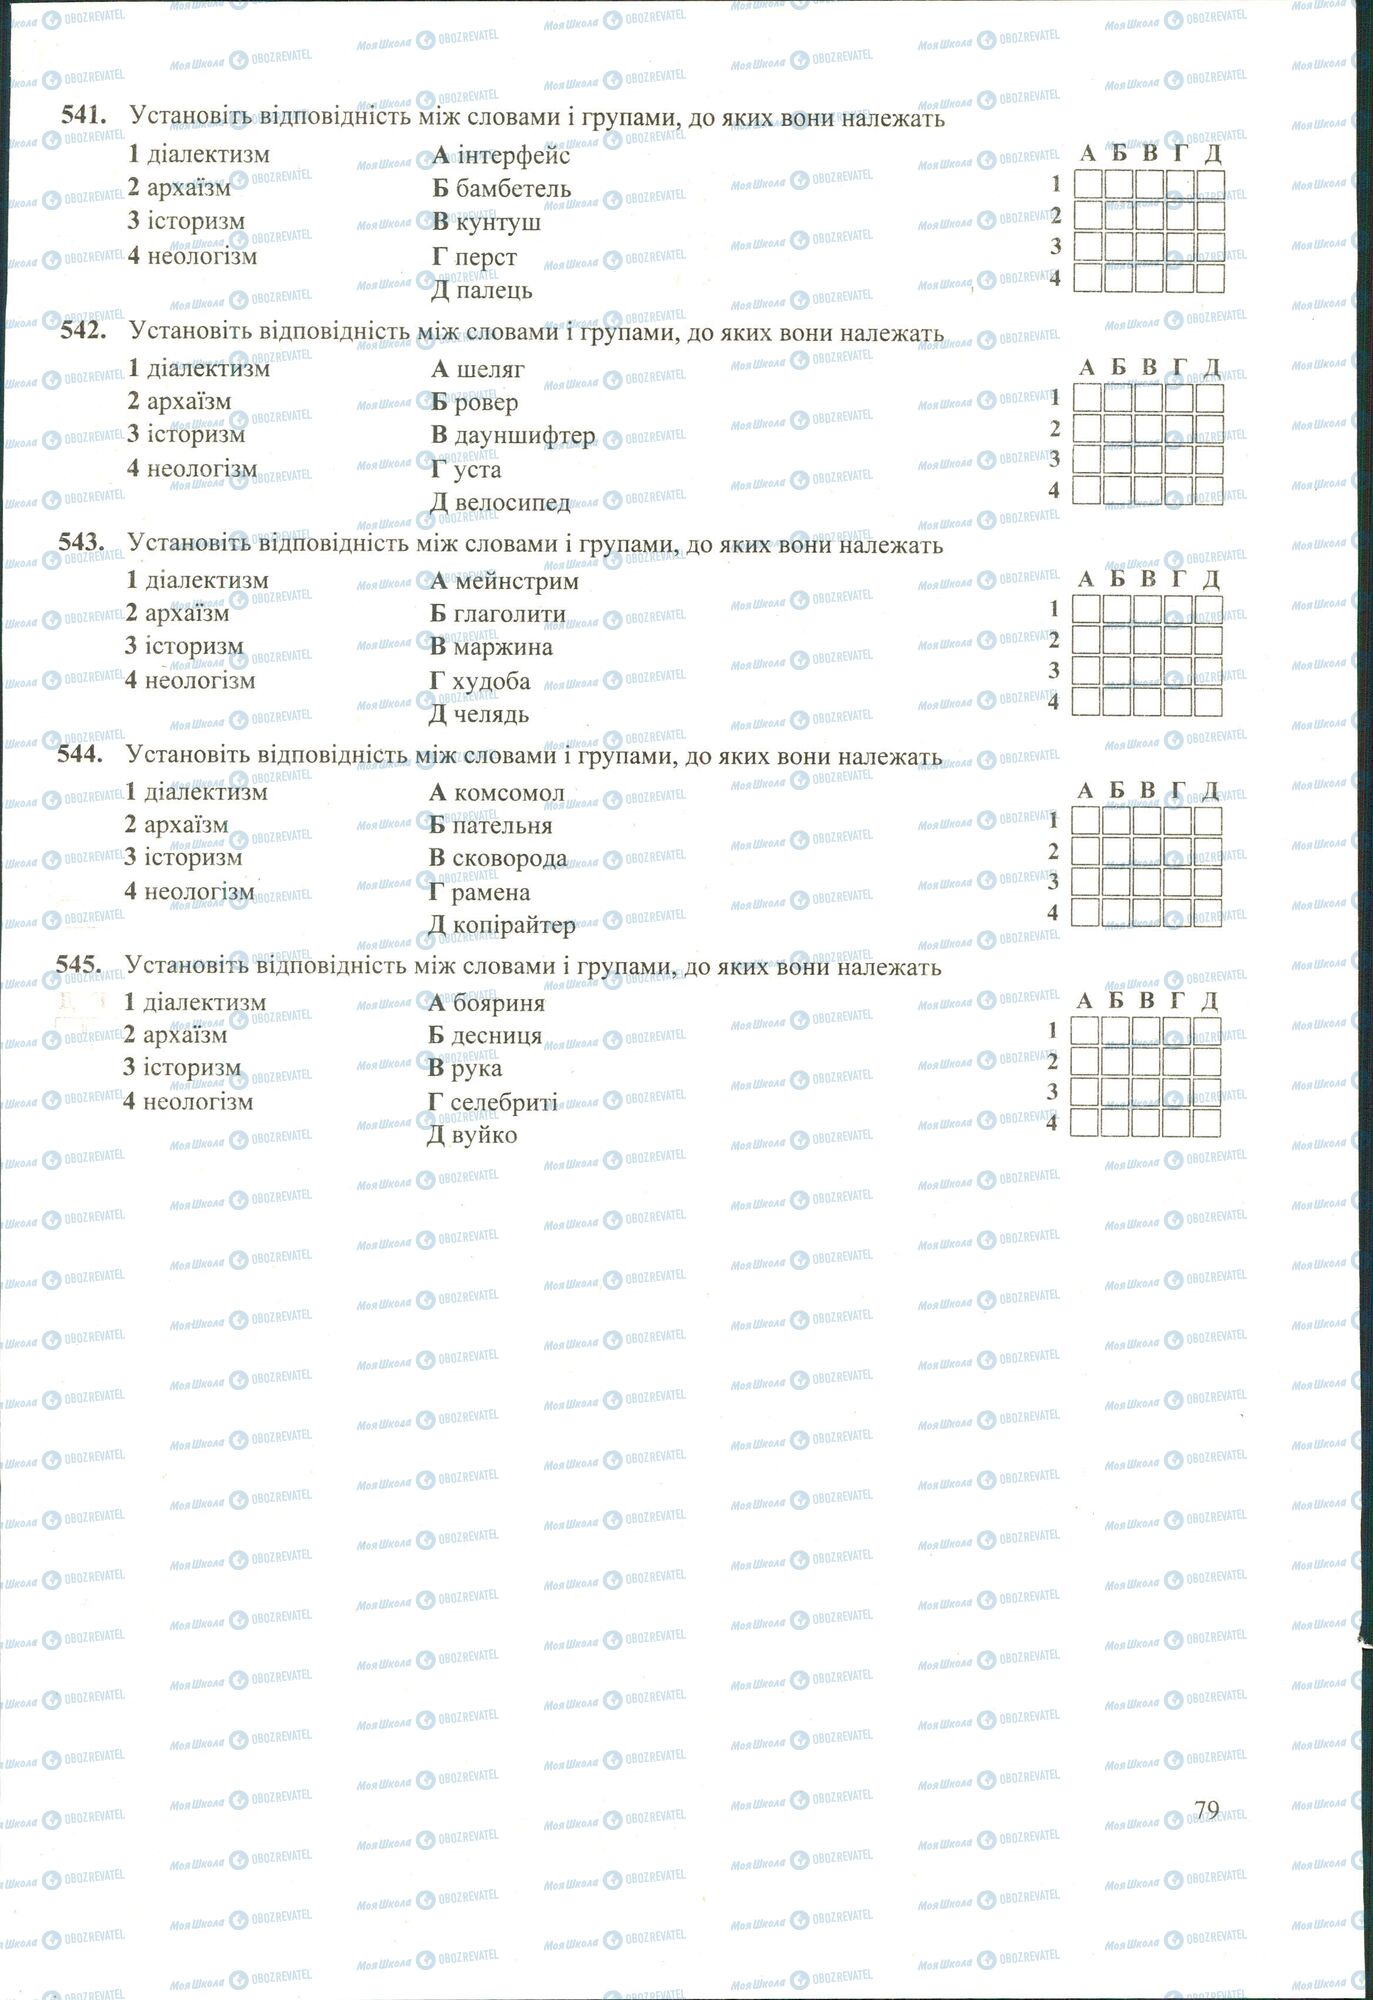 ЗНО Укр мова 11 класс страница 541-545